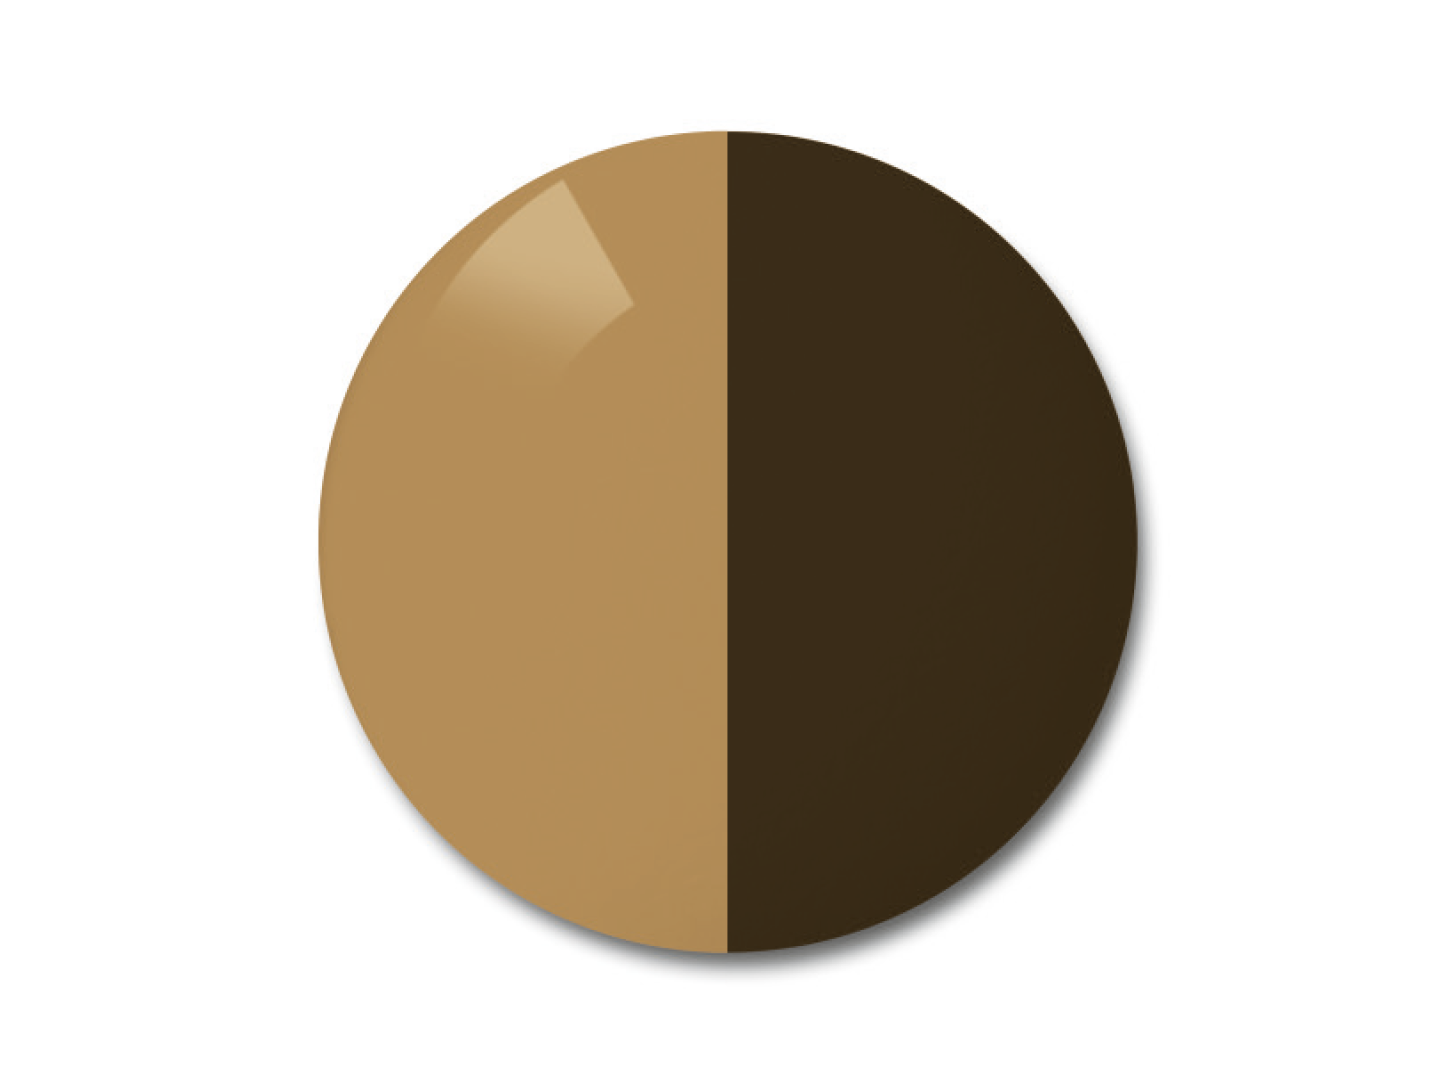 자이스 어댑티브선 변색 렌즈 중 단색 브라운 컬러를 보여주는 이미지